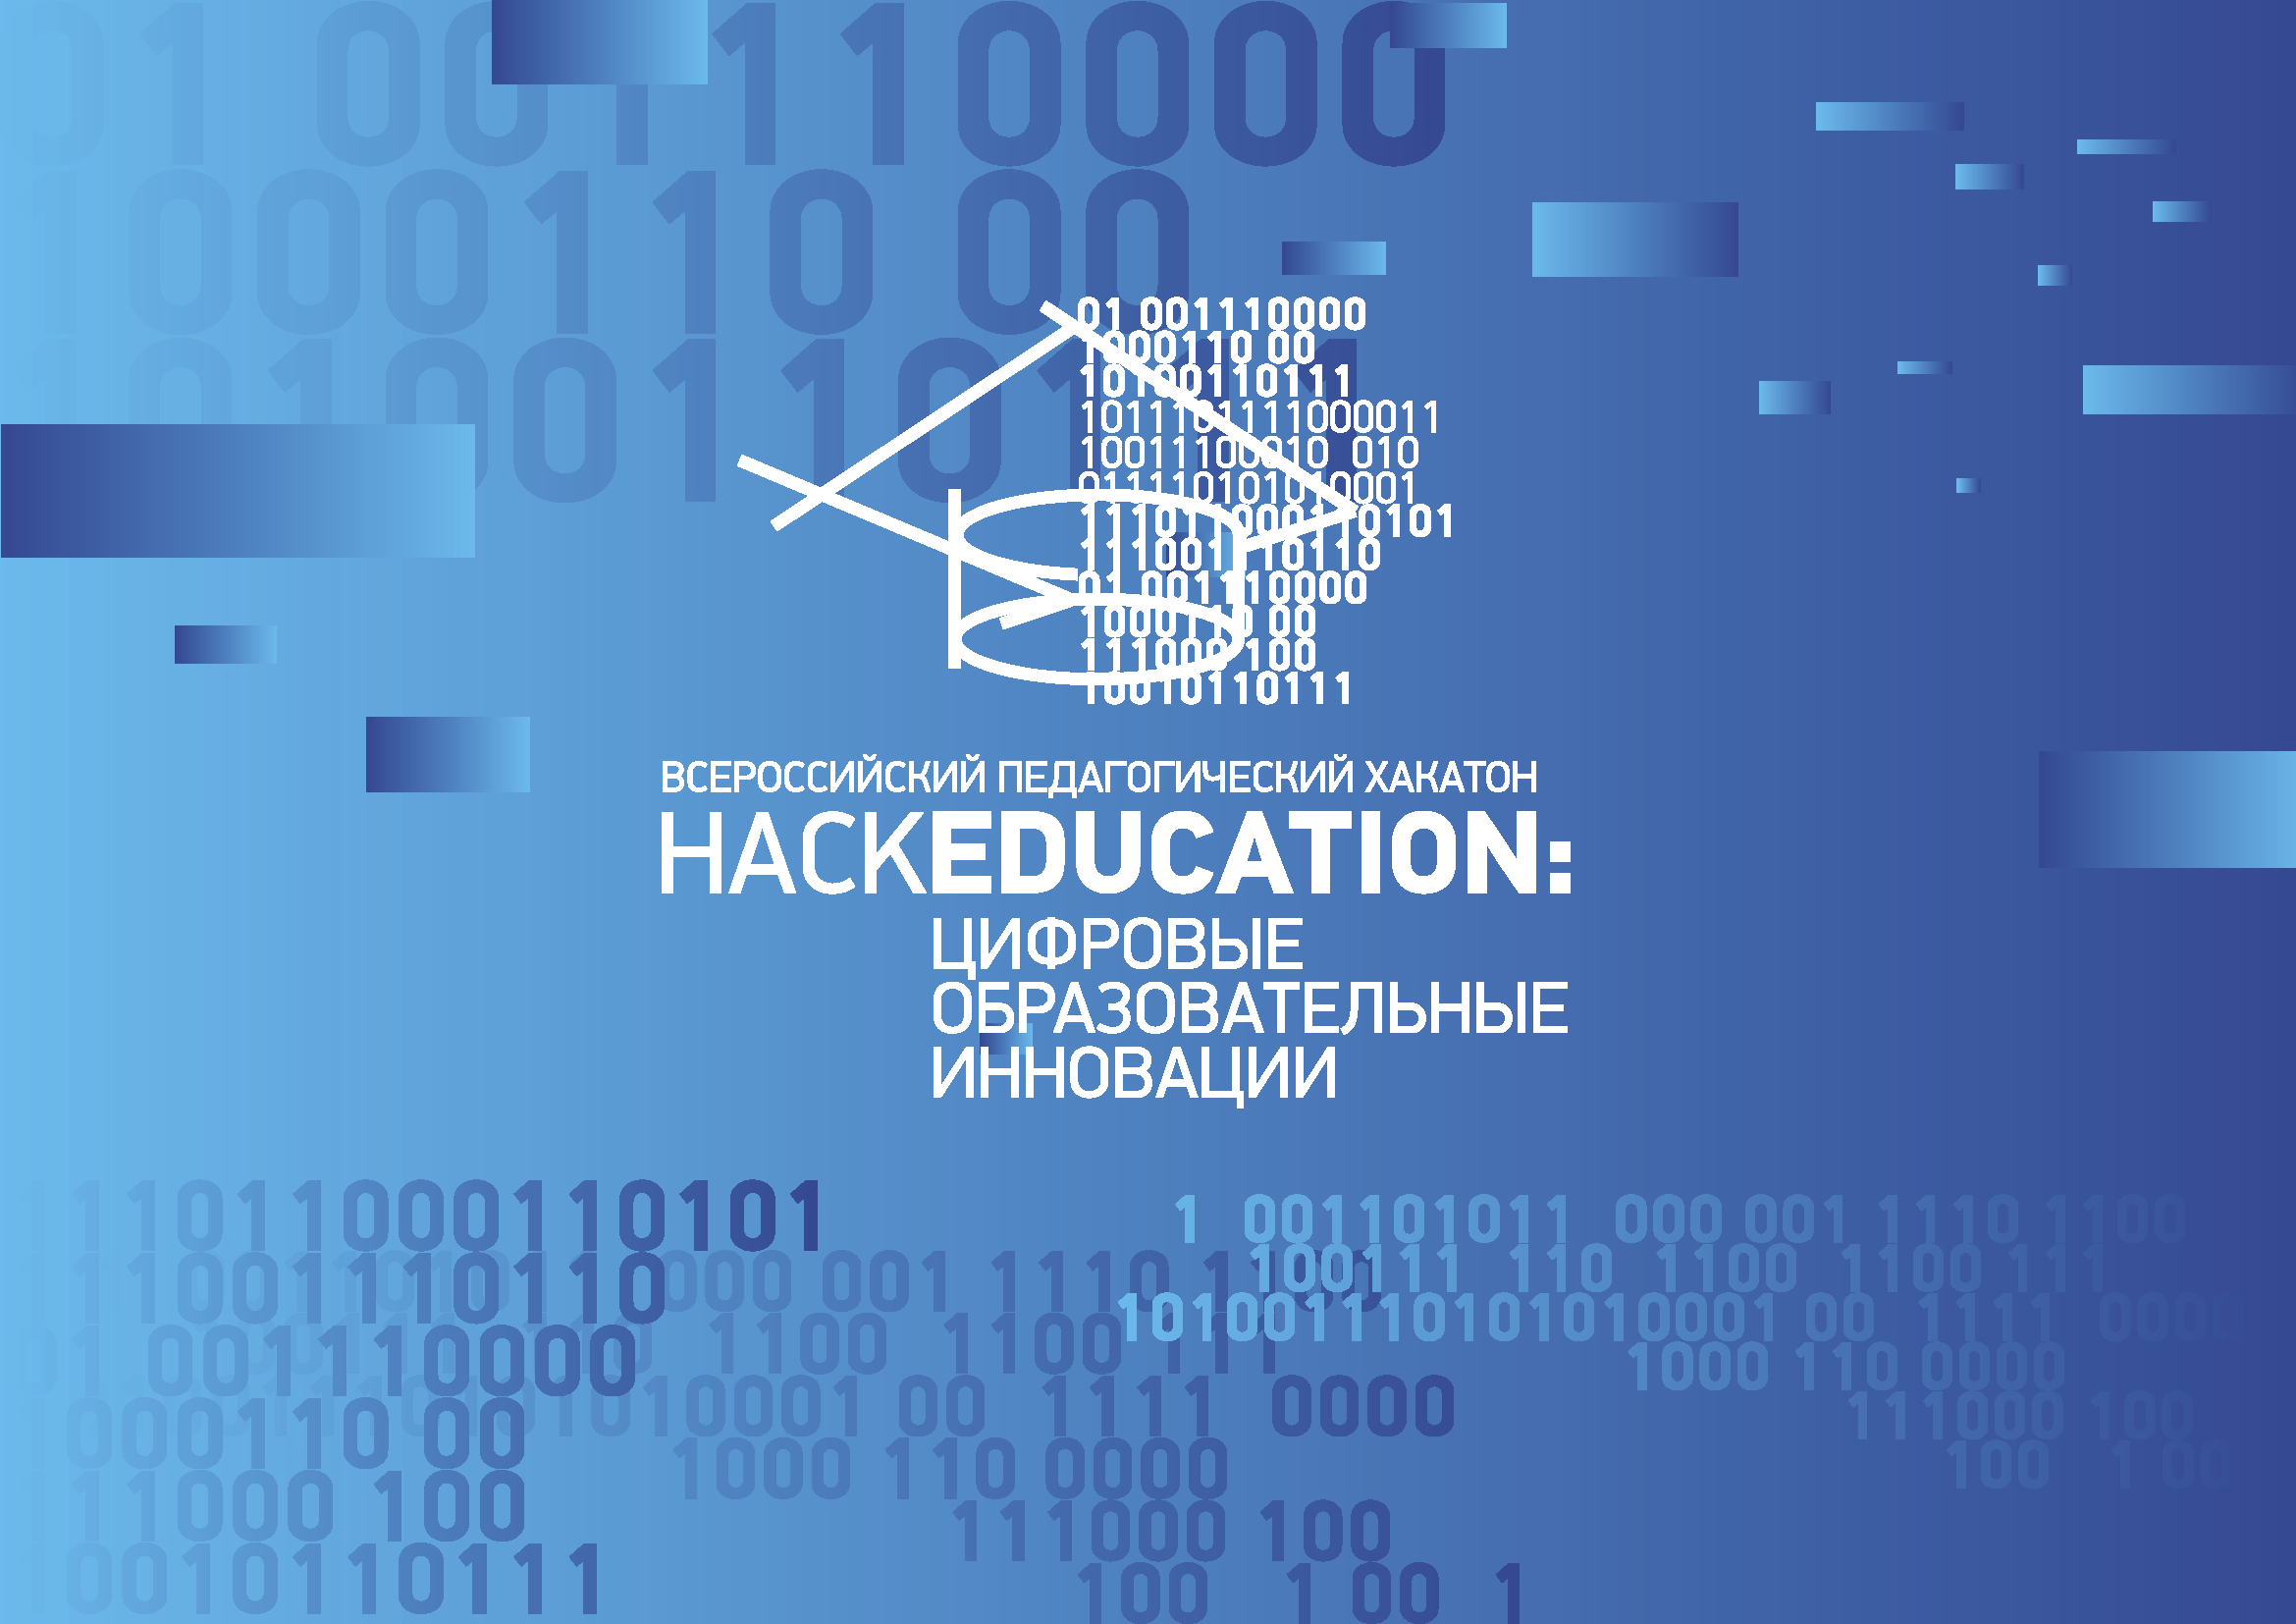 Всероссийский педагогический Хакатон “HackEducation: цифровые образовательные технологии”